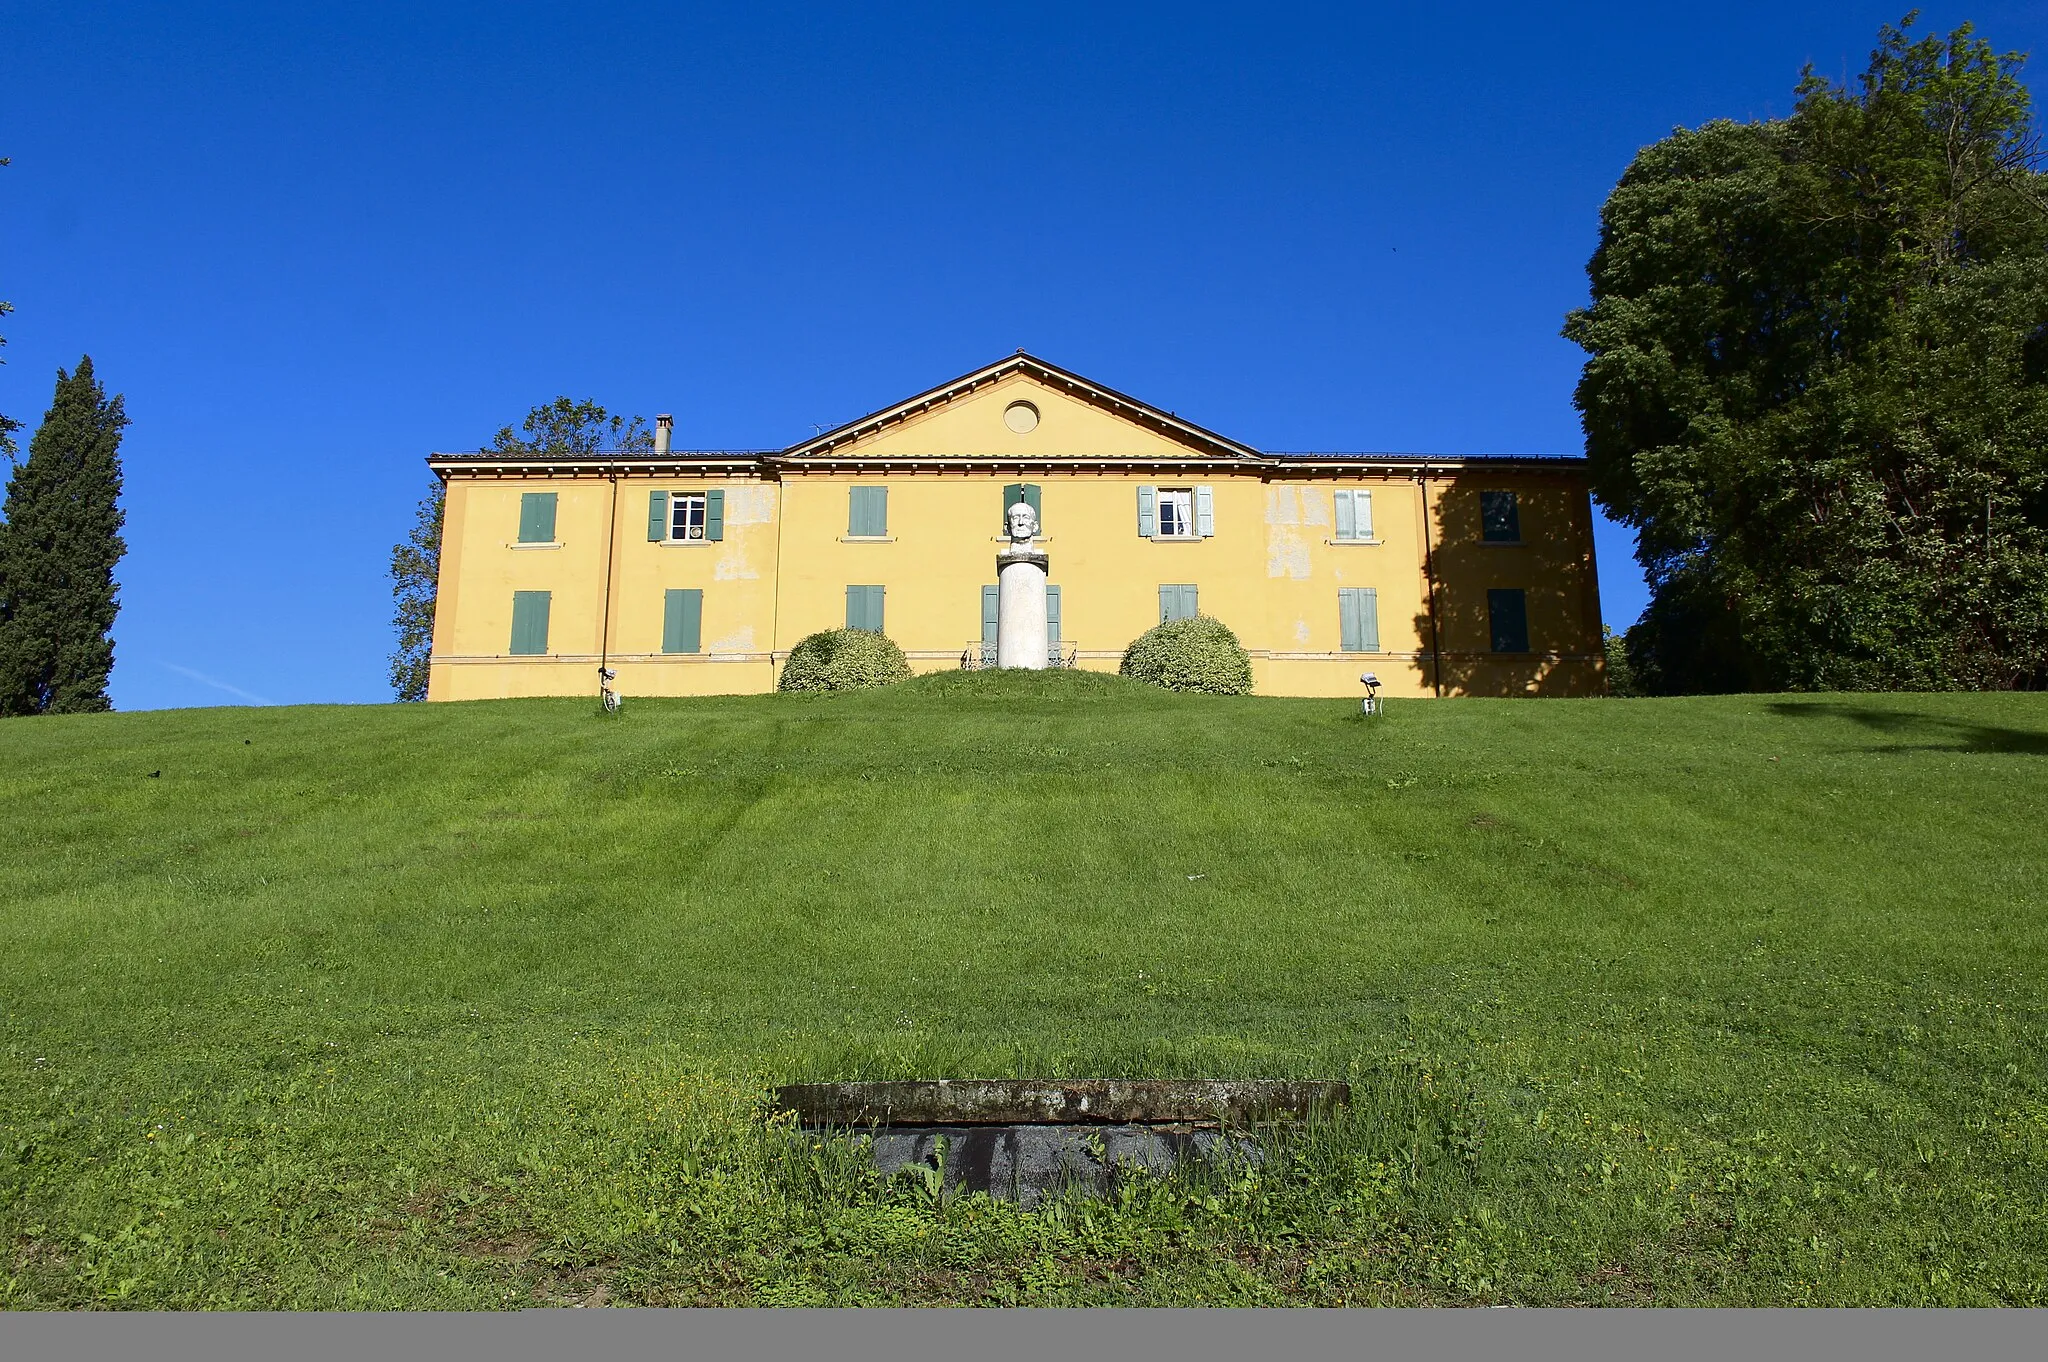 Photo showing: Villa Griffone, Pontecchio Marconi, Borgonuovo-Pontecchio, village of Sasso Marconi, metropolitan city of Bologna, Emilia-Romagna, Italy